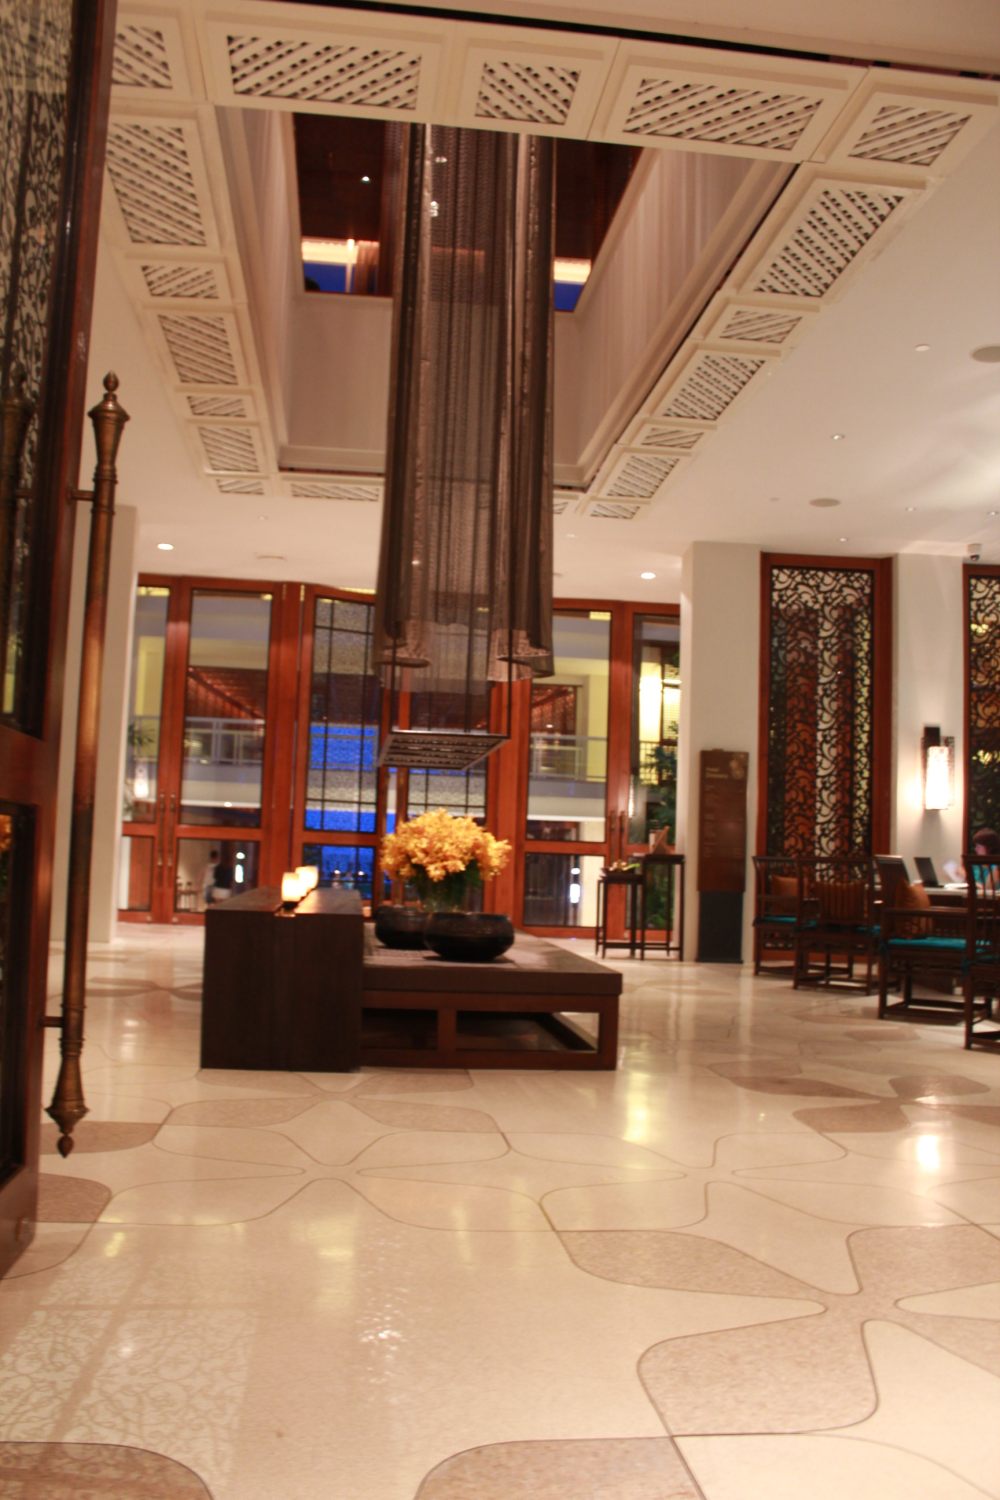 泰国华欣洲际度假村(会员自拍)Intercontinental Hua Hin Resort_IMG_5828.JPG